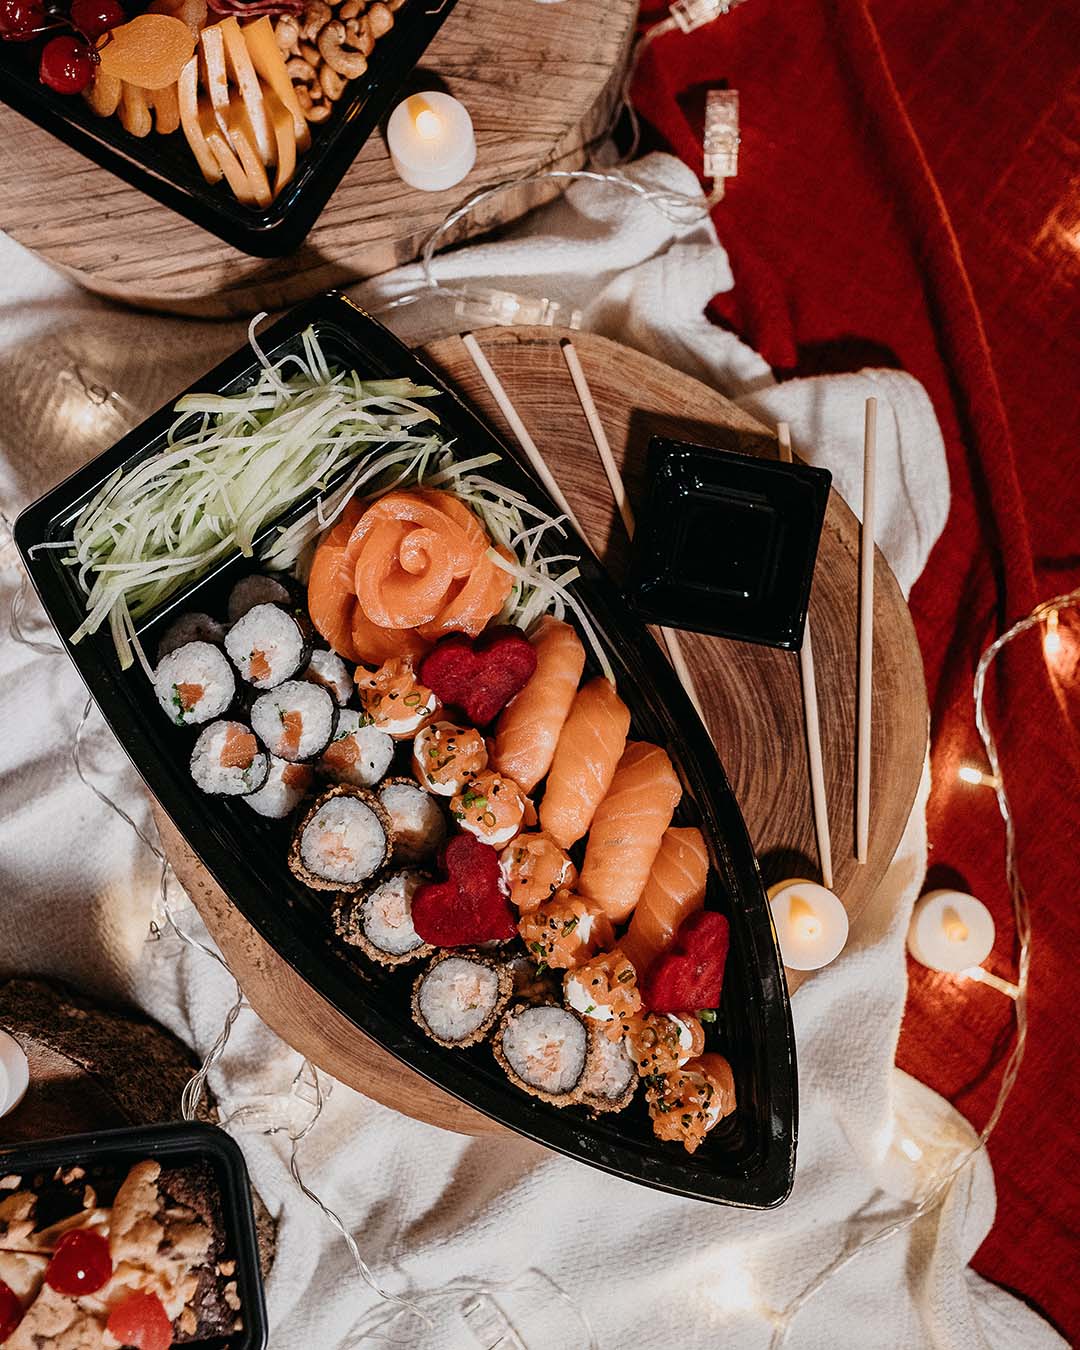 wedding food ideas sushi set vitor monthay unsplash